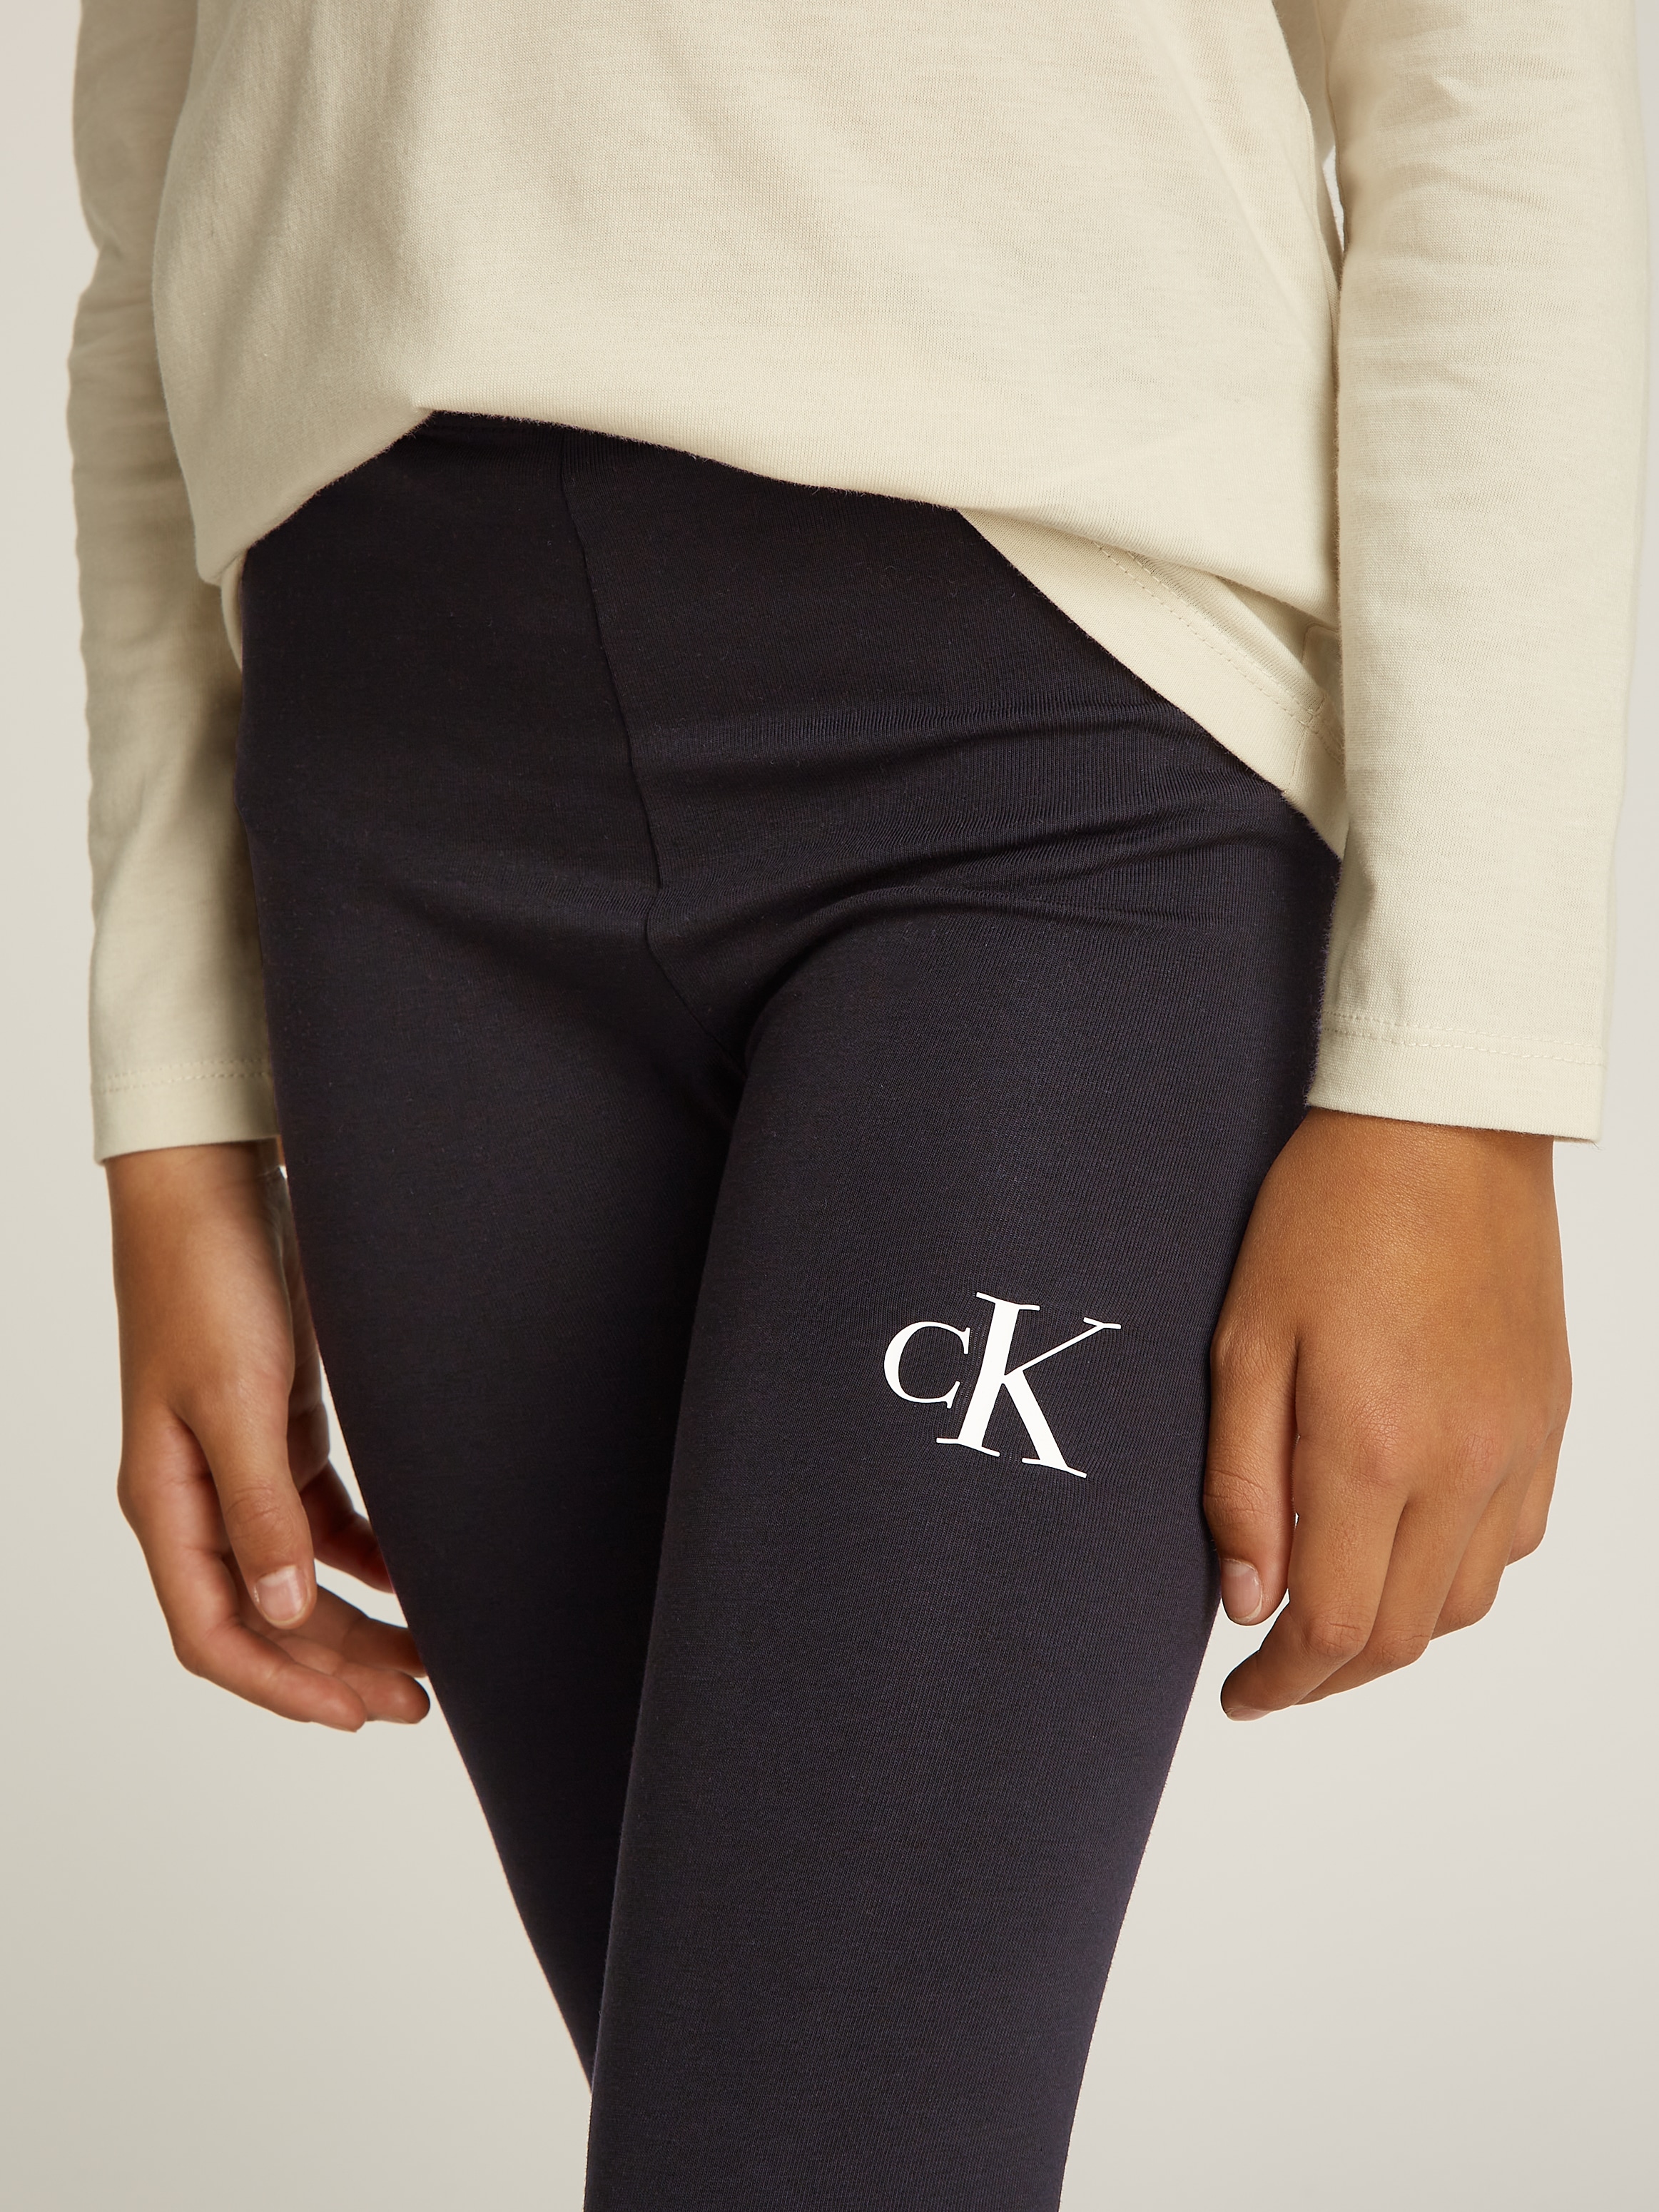 Calvin Klein Jeans Leggings »CK LOGO LEGGING«, für Kinder bis 16 Jahre